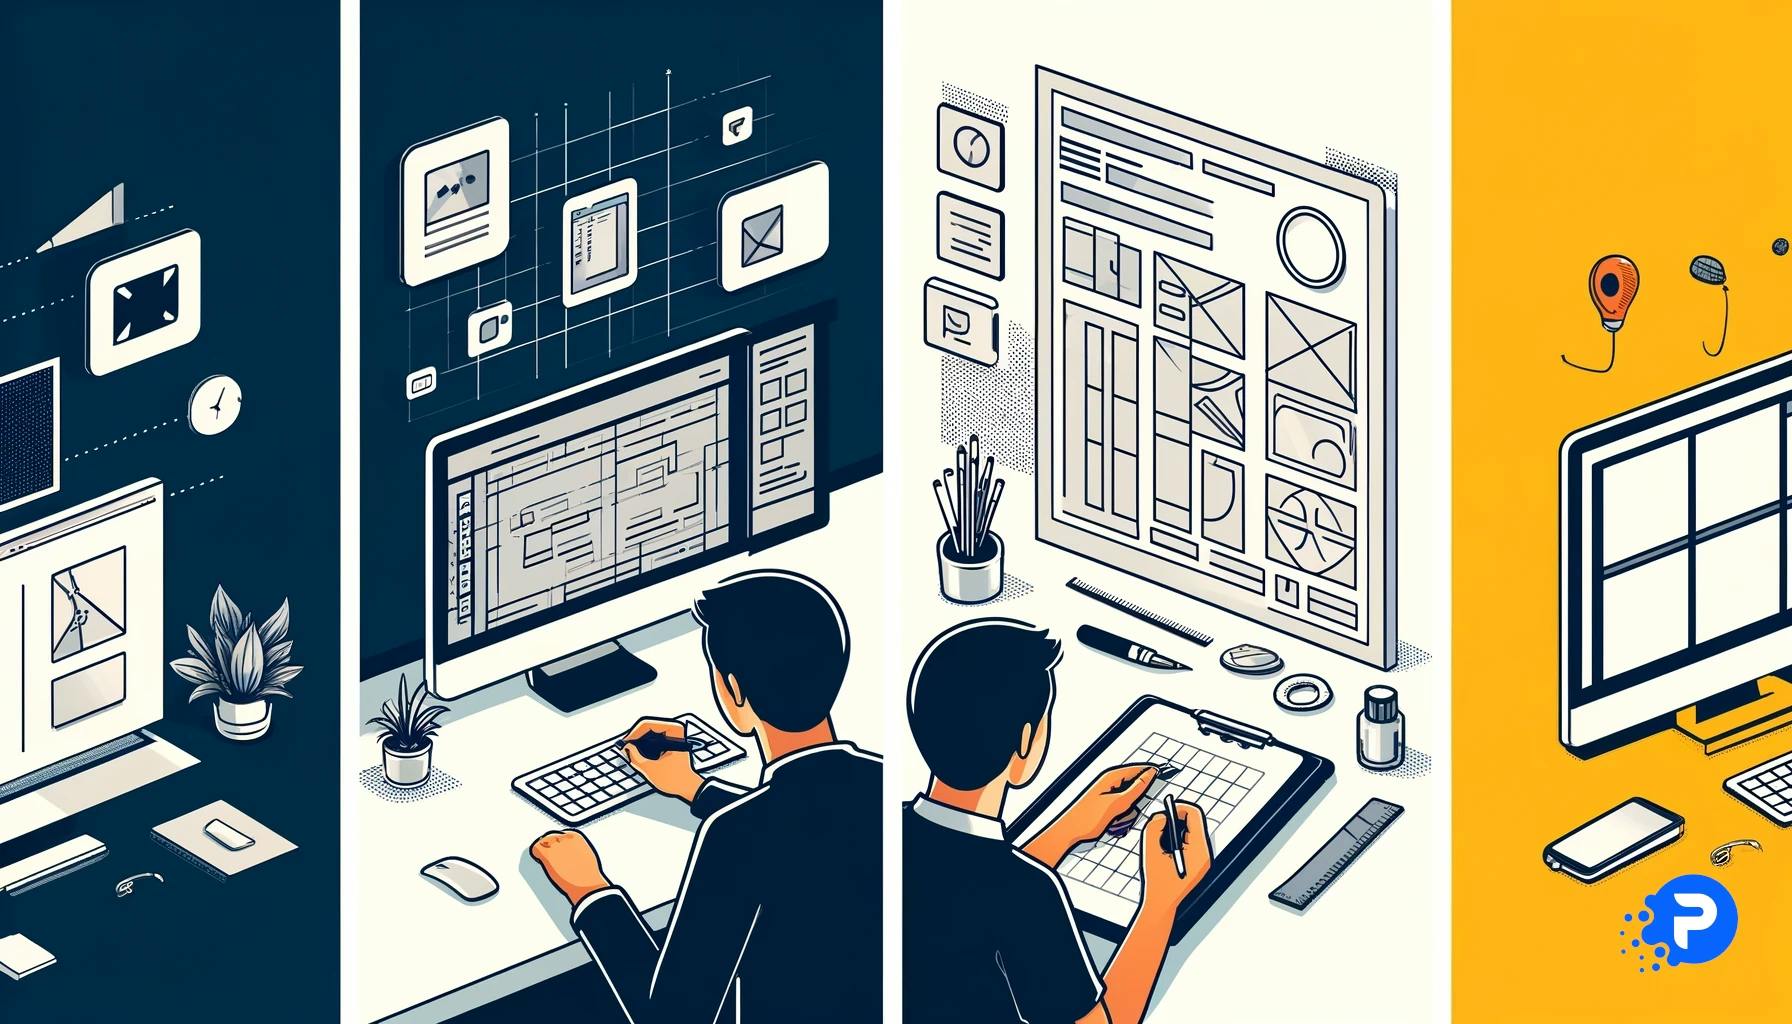 Ilustração mostrando dois métodos de geração de ideias: à esquerda, um designer usa um programa de design digital no computador; à direita, alguém desenha um wireframe manualmente com lápis e régua, destacando o valor de ambos os processos criativos.